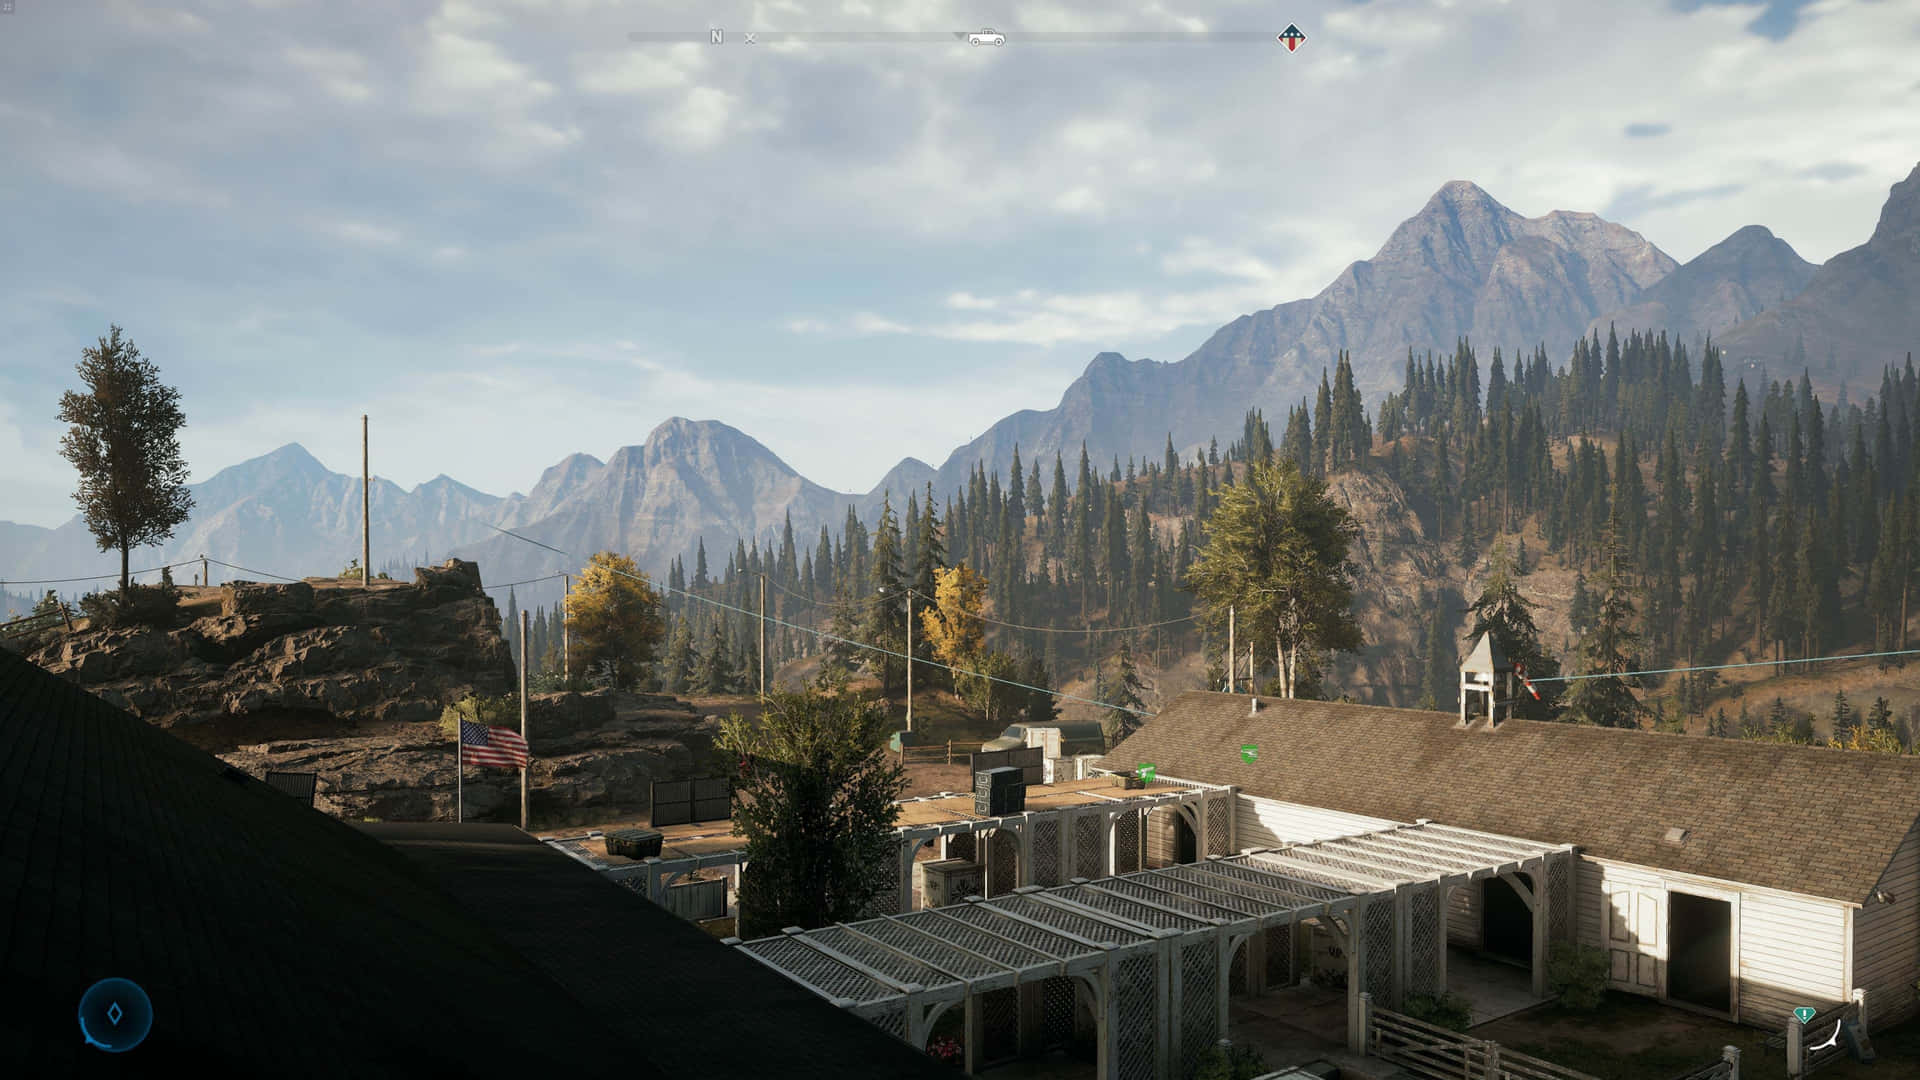 Unacaptura De Pantalla De Un Pueblo En Las Montañas En Far Cry 4. Fondo de pantalla